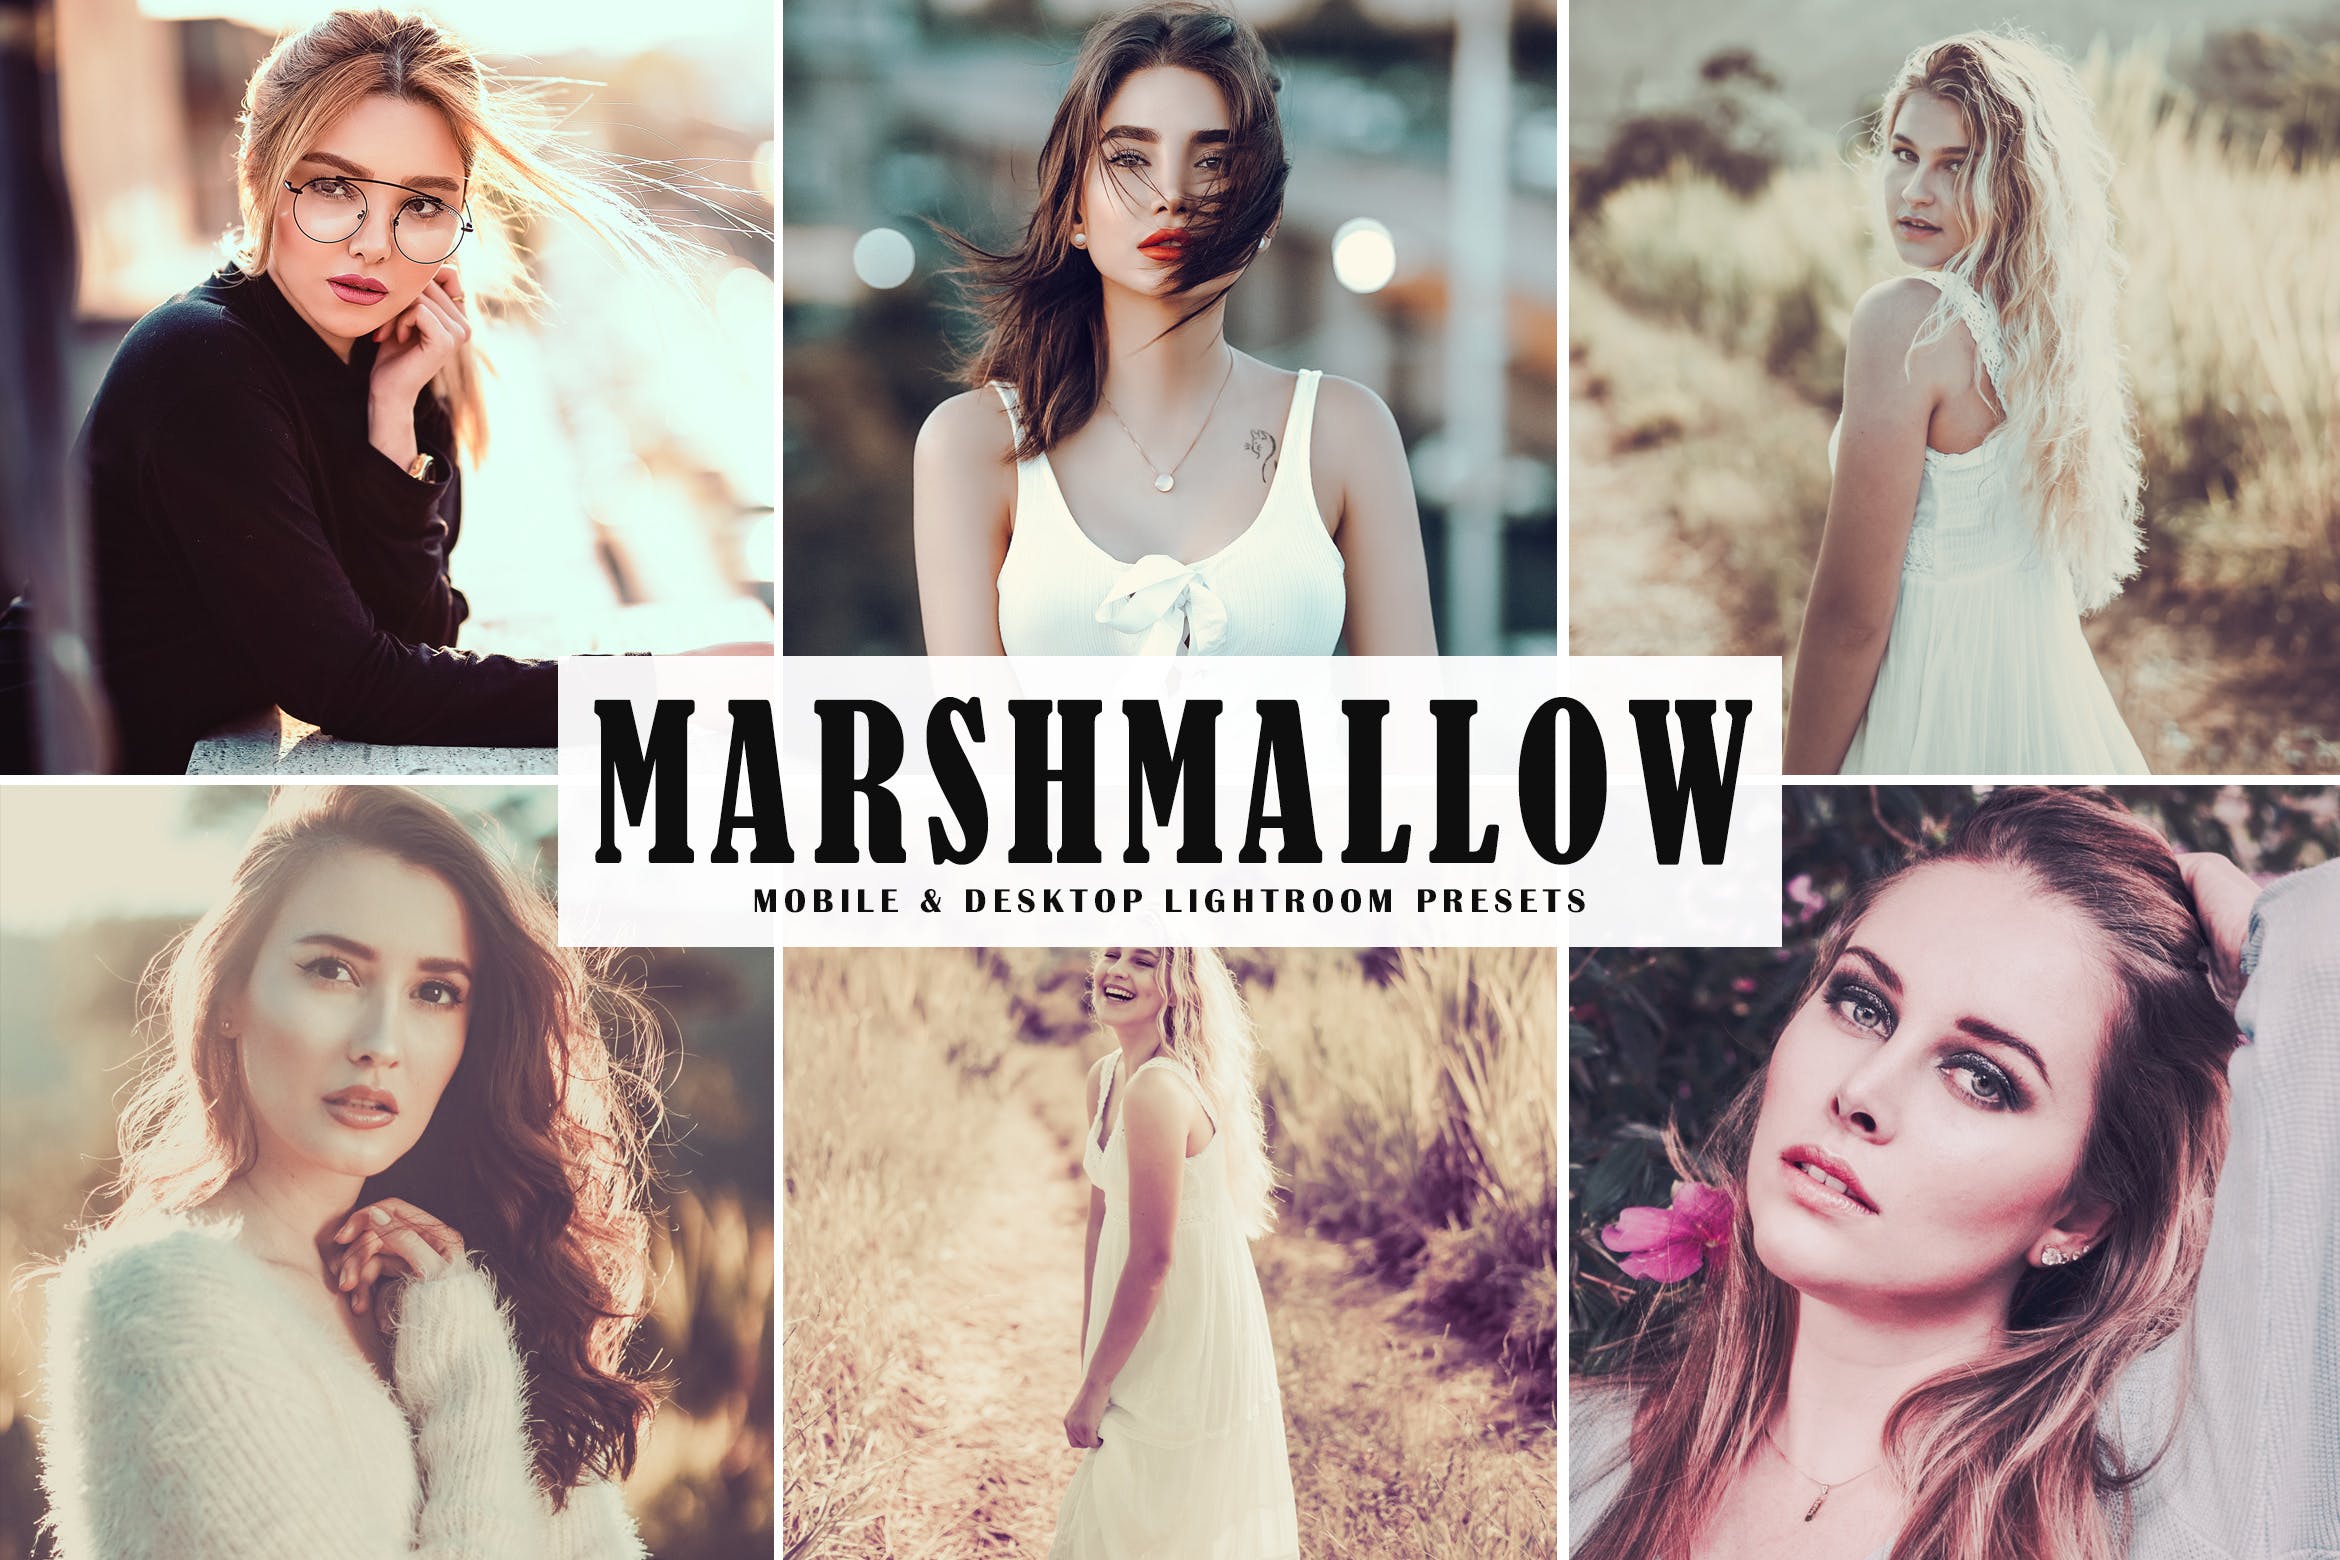 时尚女性摄影照片调色滤镜第一素材精选LR预设 Marshmallow Mobile & Desktop Lightroom Presets插图